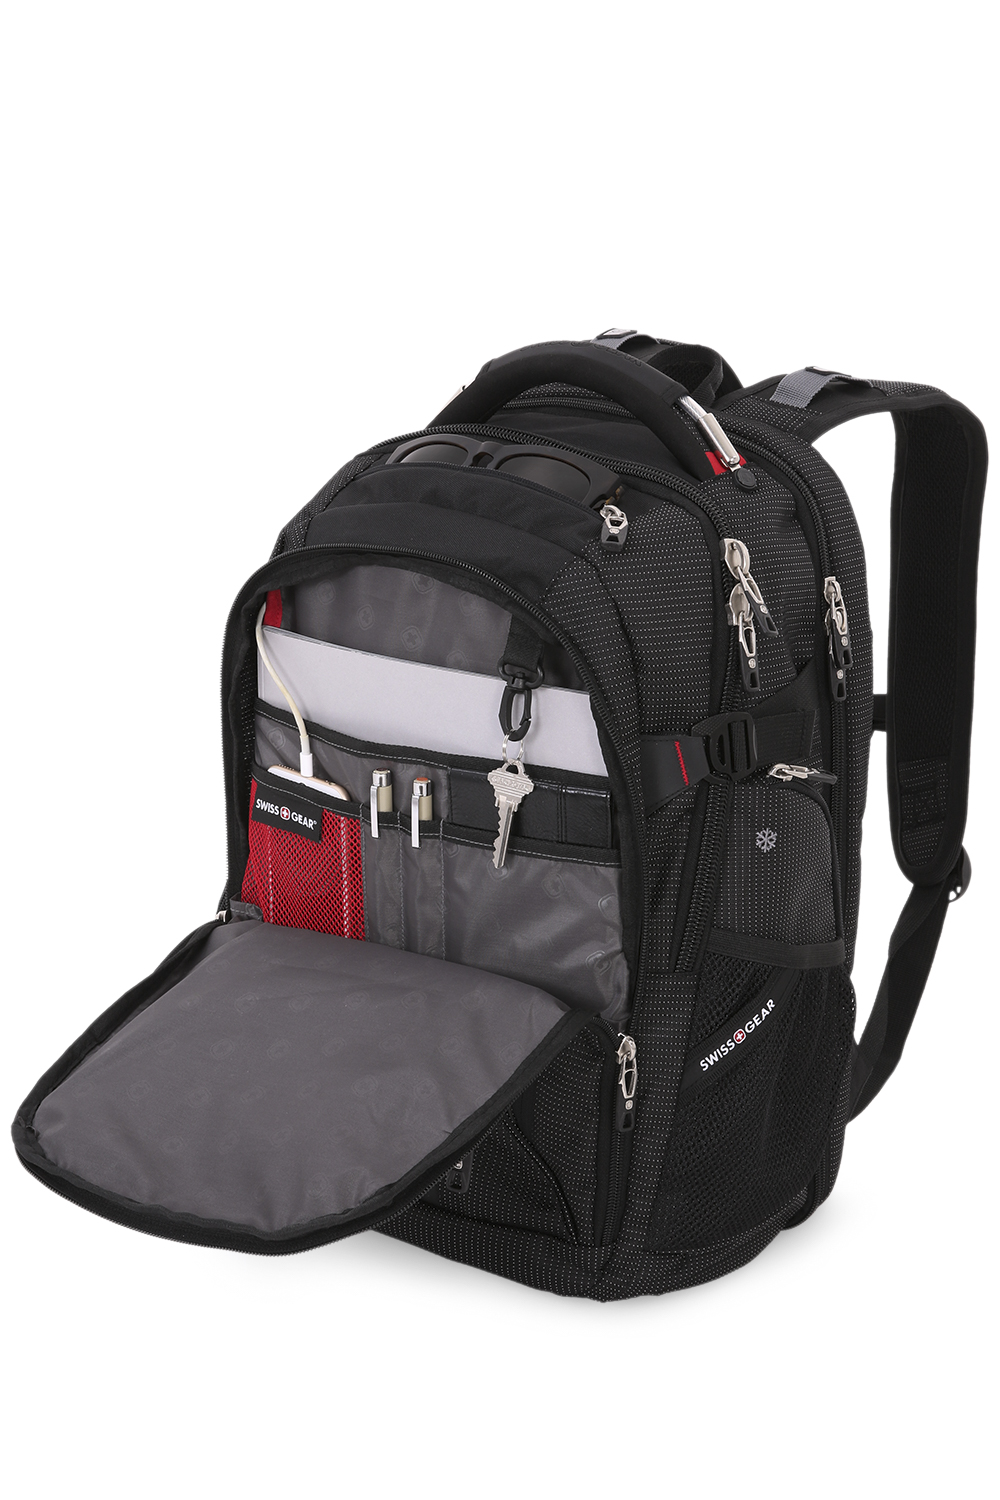  5358 USB ScanSmart Laptop Backpack